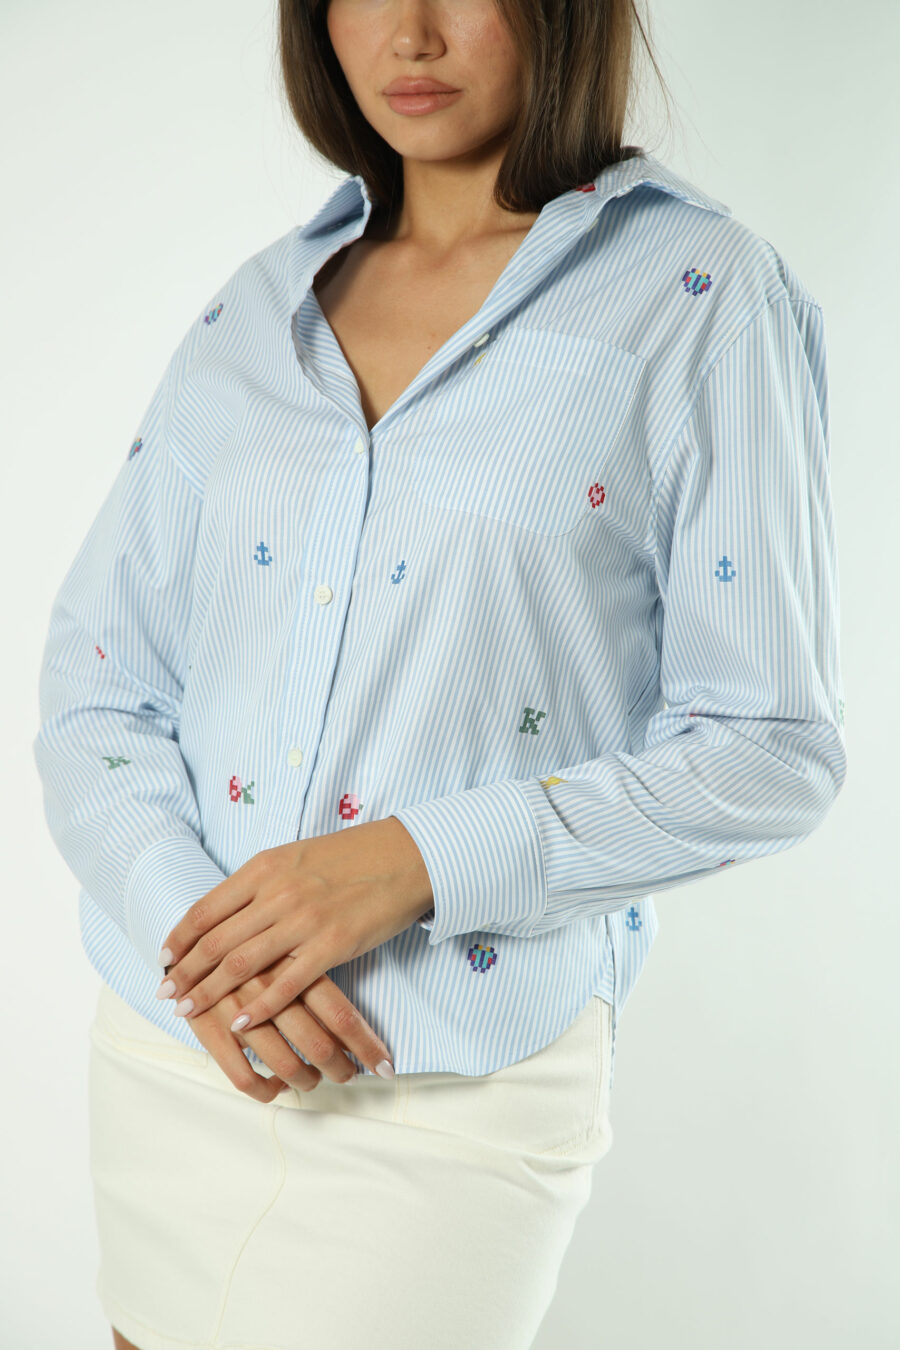 Camisa azul com "kenzo pixel" multicolorido - Fotos 1410